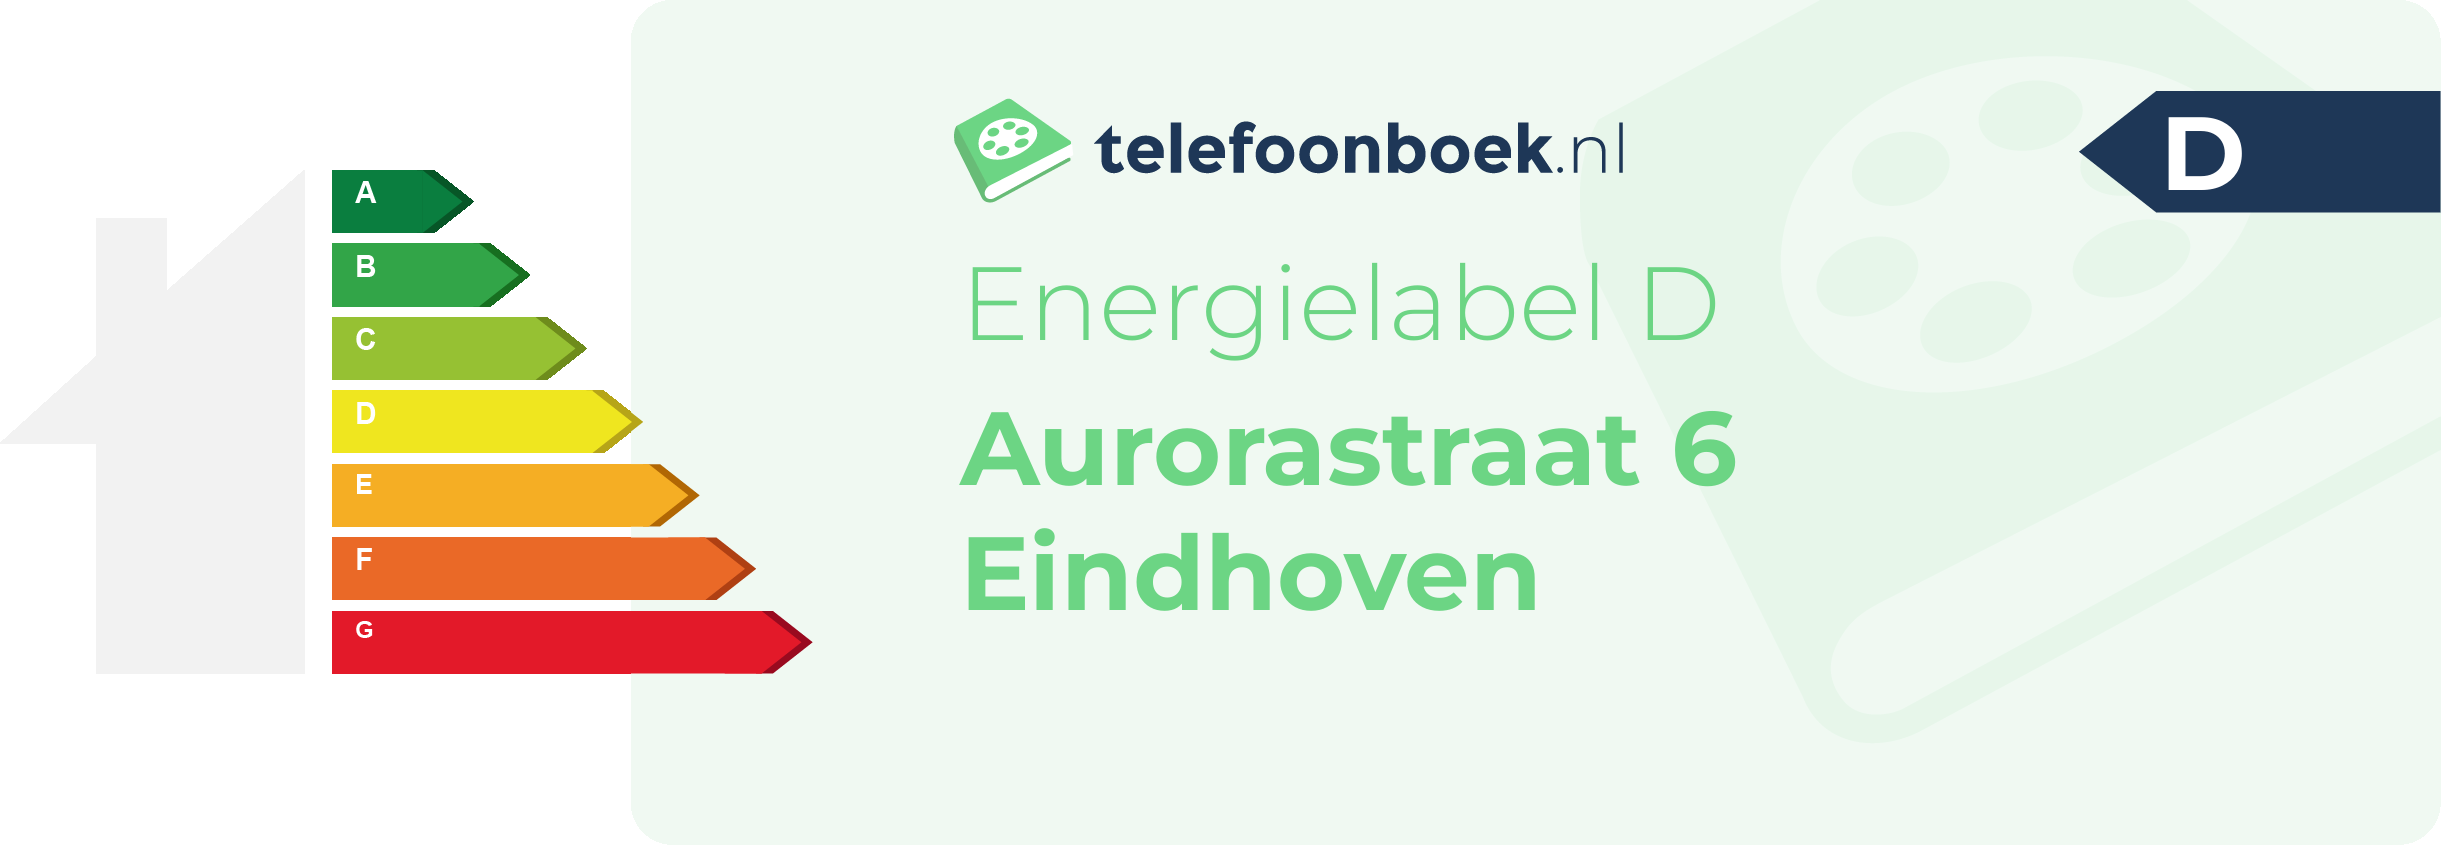 Energielabel Aurorastraat 6 Eindhoven